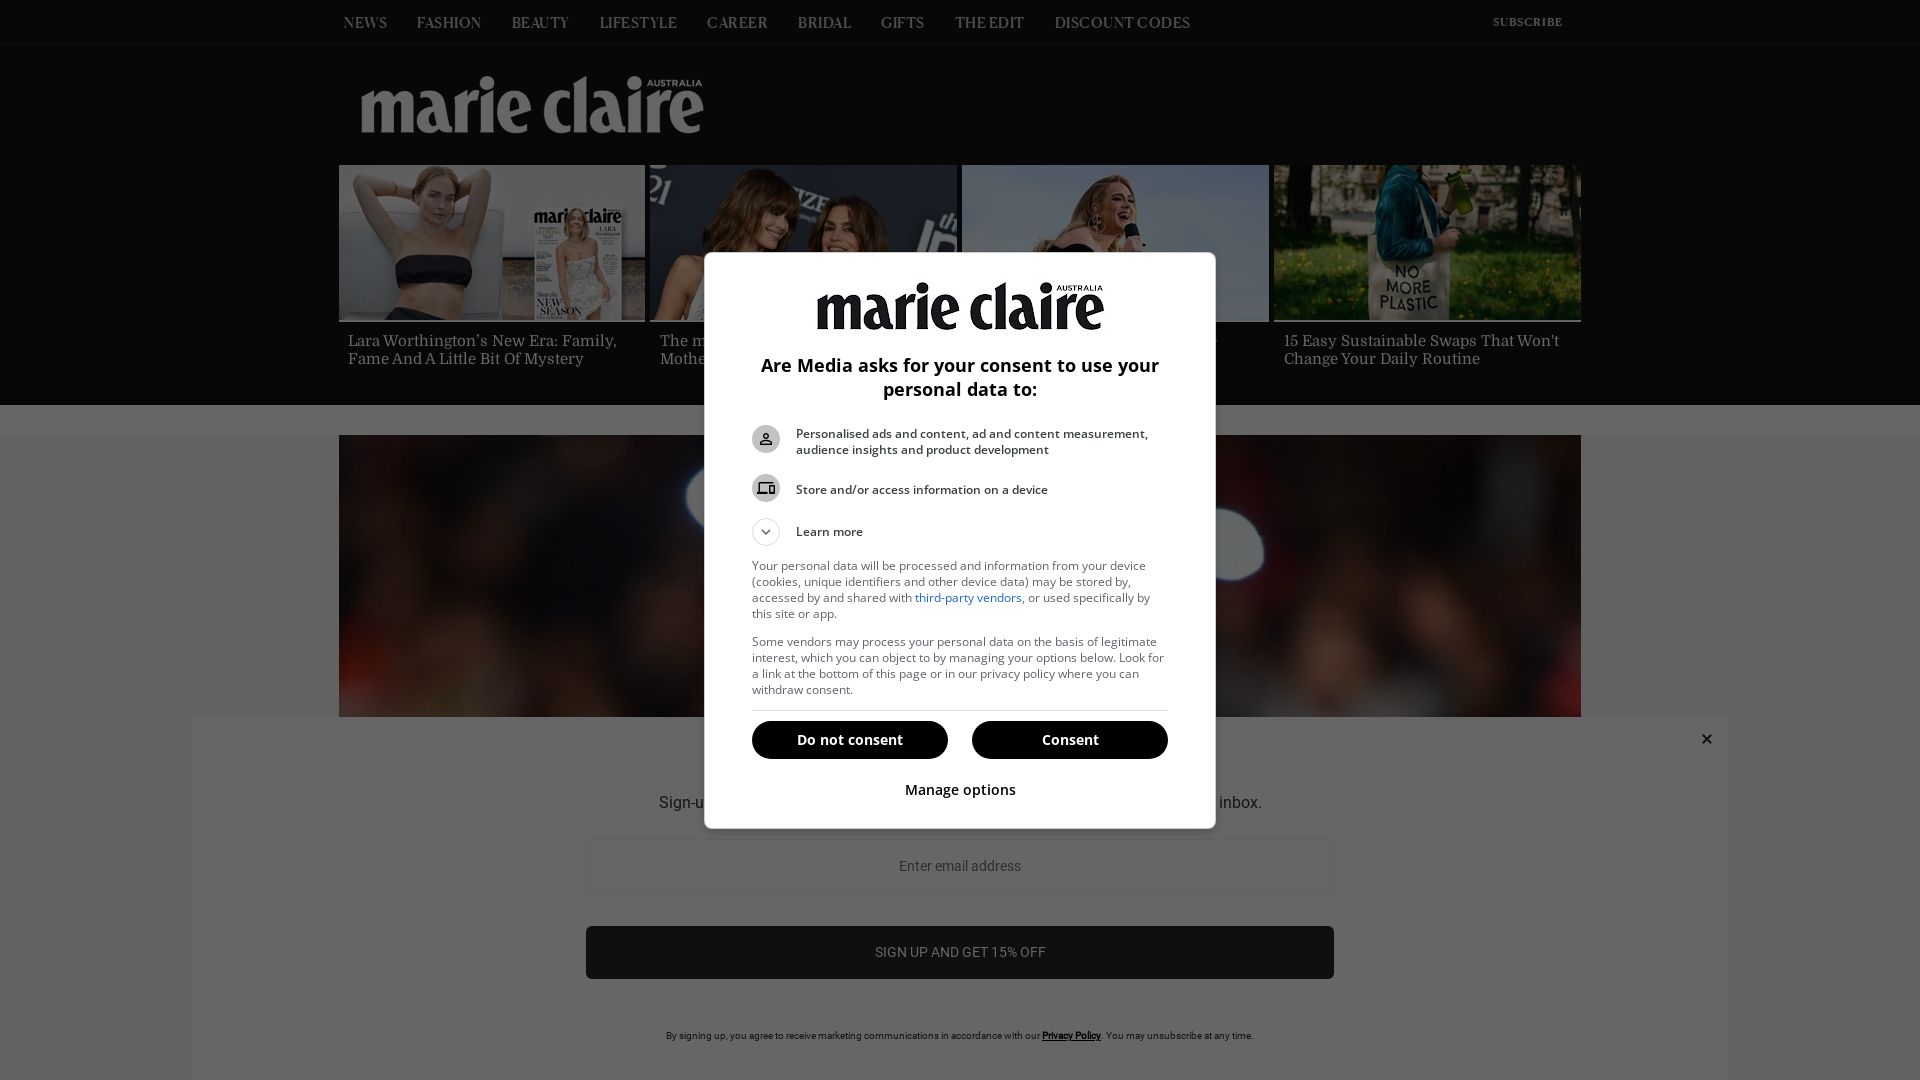 网站状态 marieclaire.com.au 是  在线的